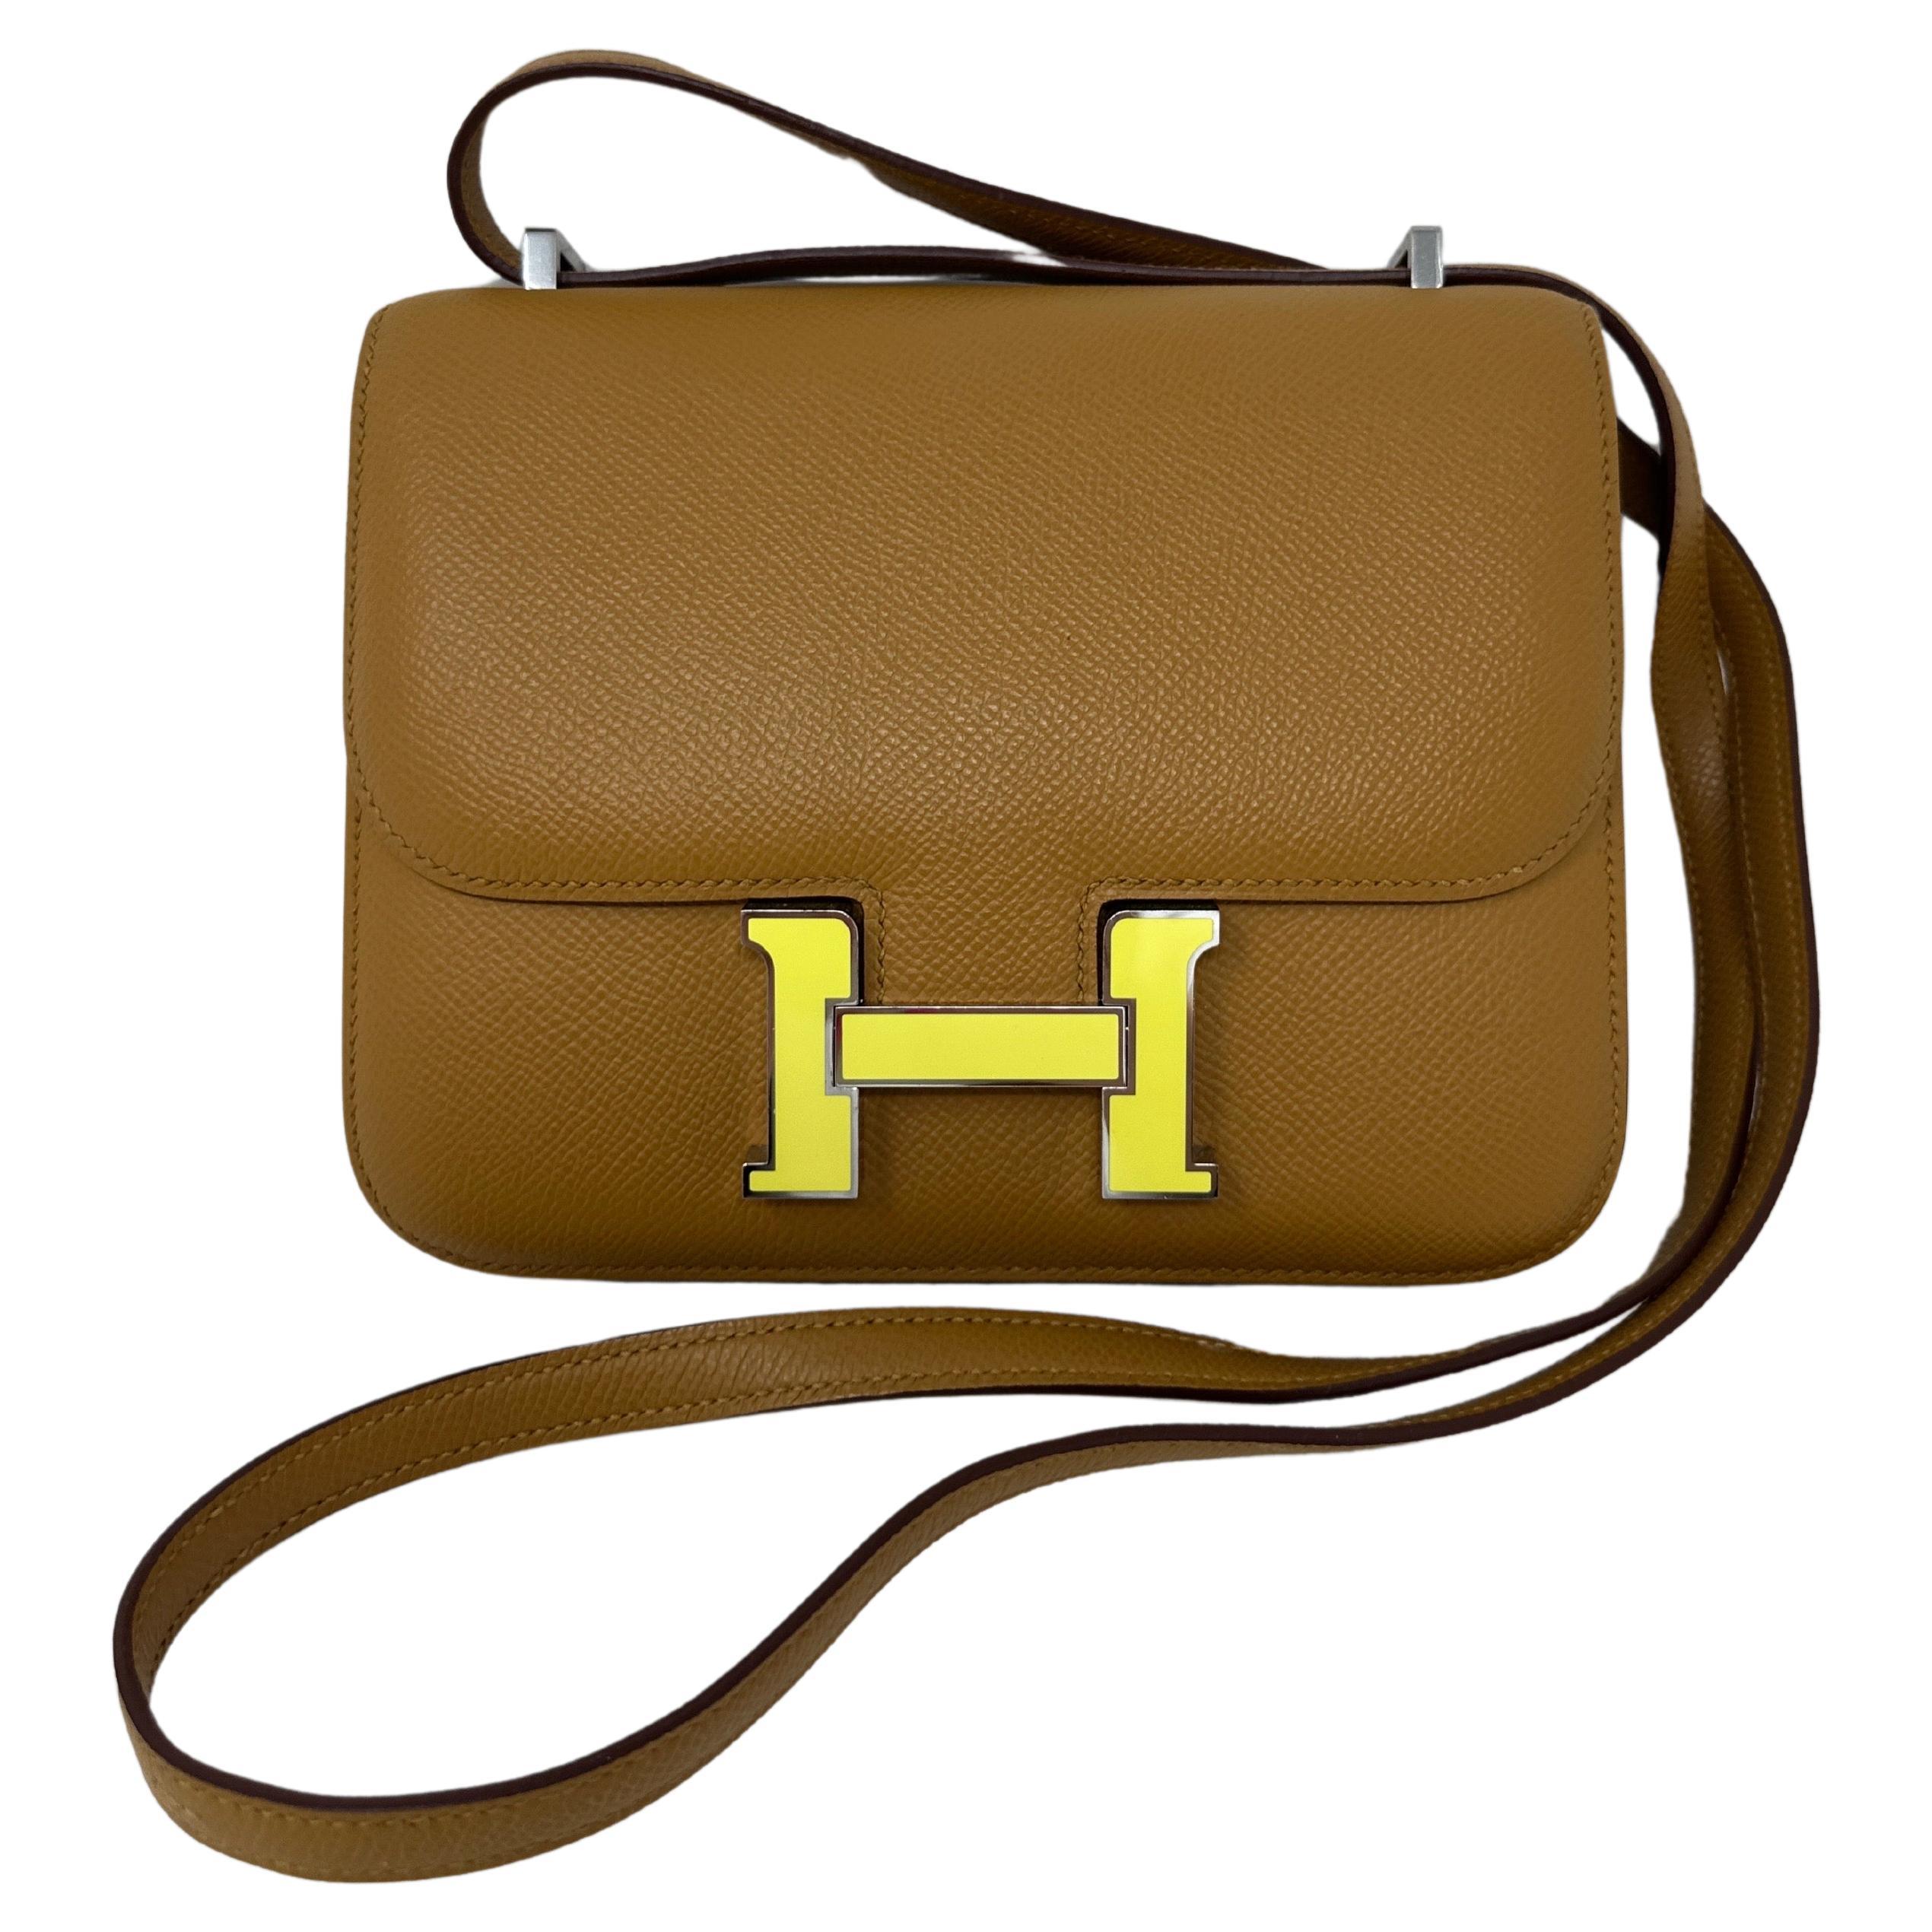 Tasche "Constance" von Hermes